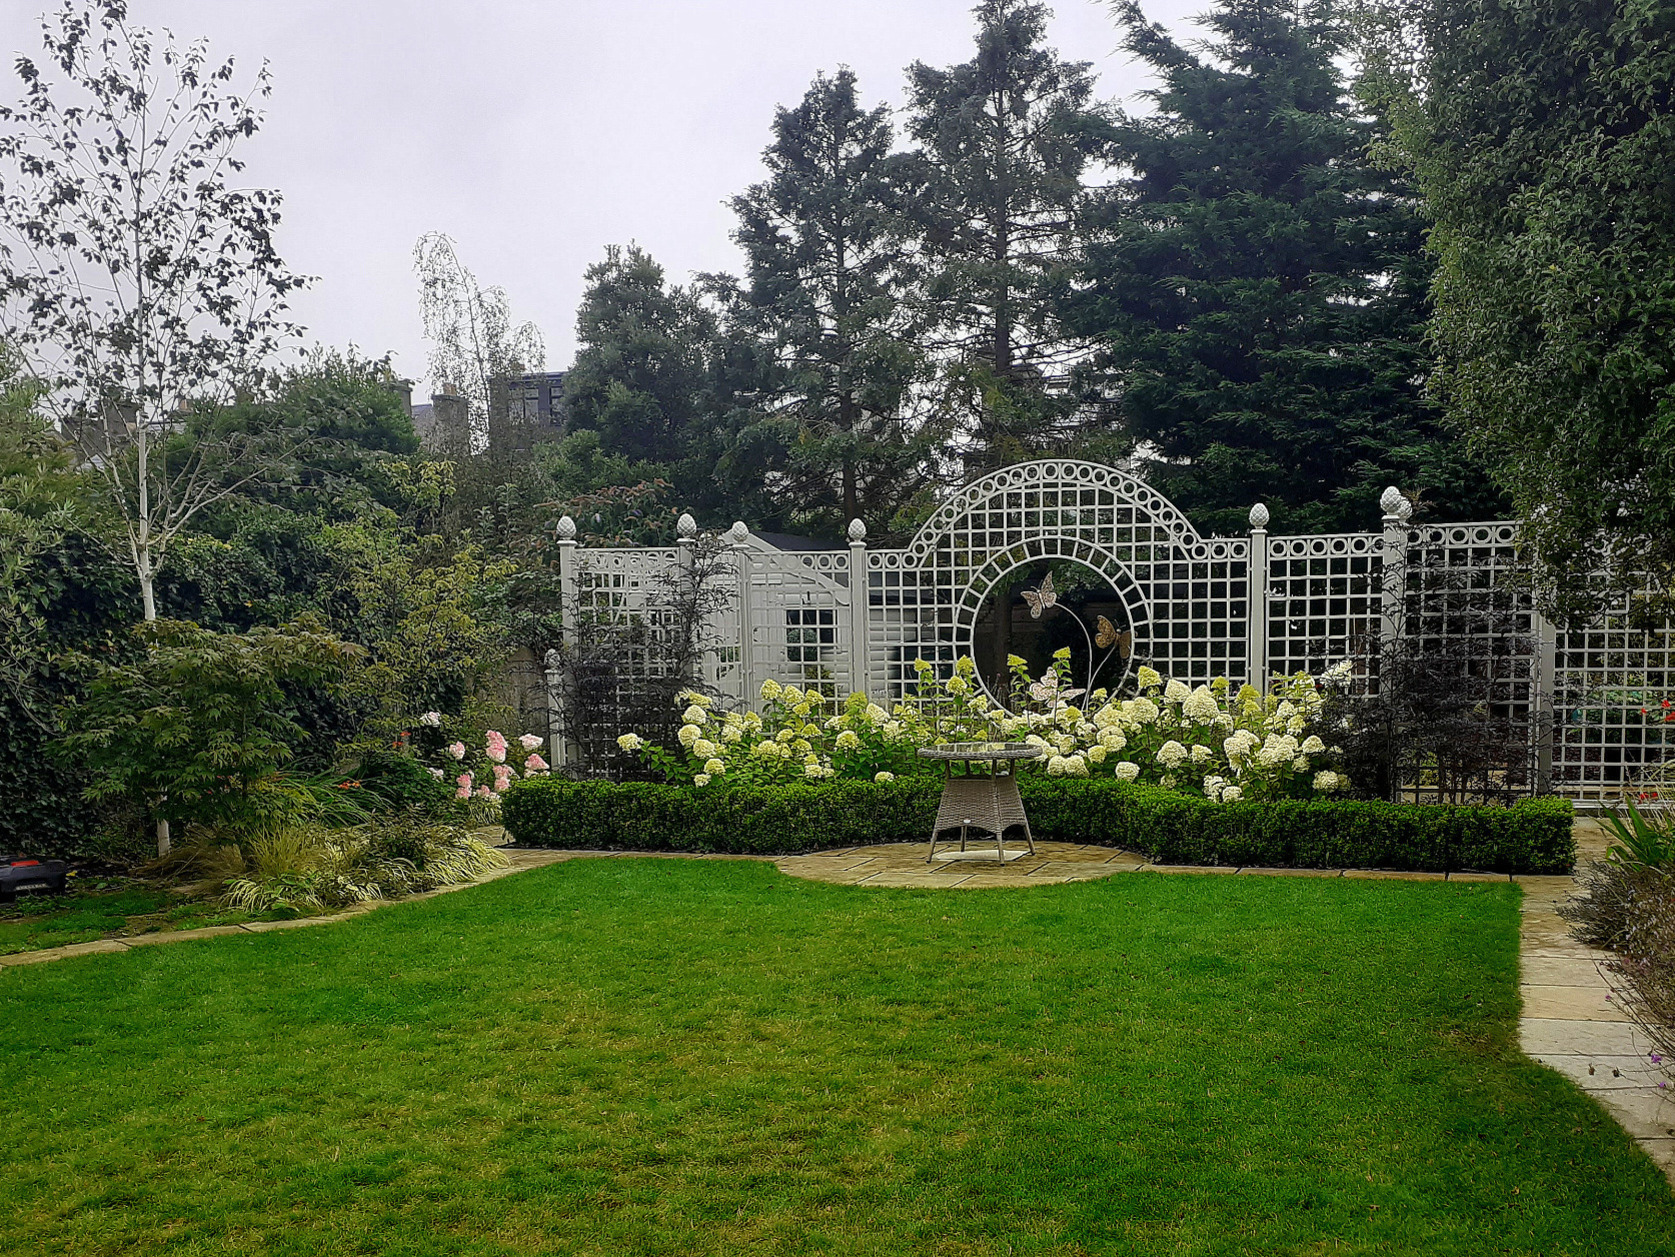 Bespoke Garden Trellis Screen - supplied + fitted by Owen Chubb Garden Landscapers. Tel 087-2306 128